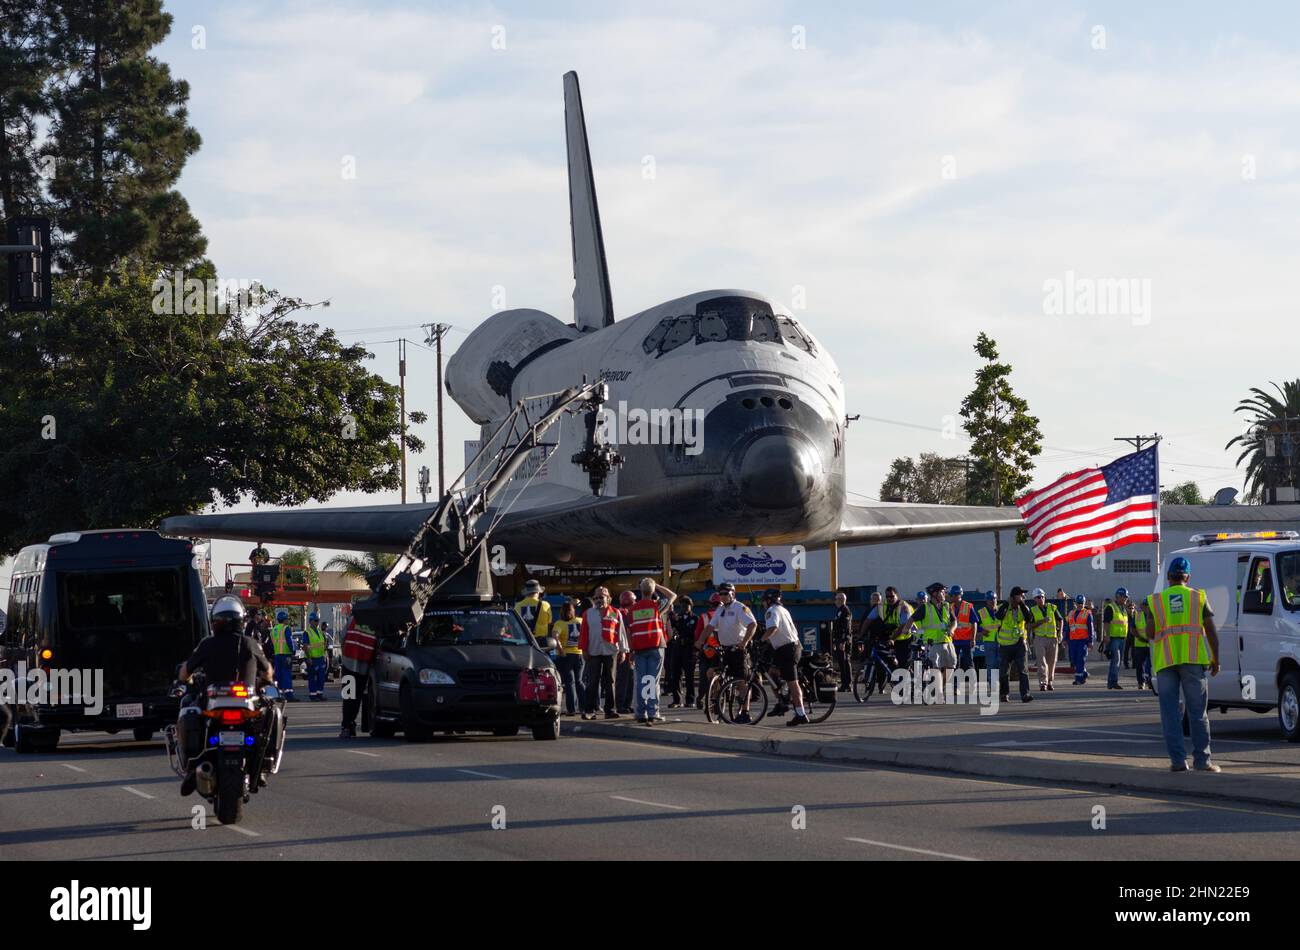 Historisches Bild des Space Shuttle Endeavour, das auf dem Crenshaw Boulevard gezeigt wird, während es zum California Science Center transportiert wird. Stockfoto